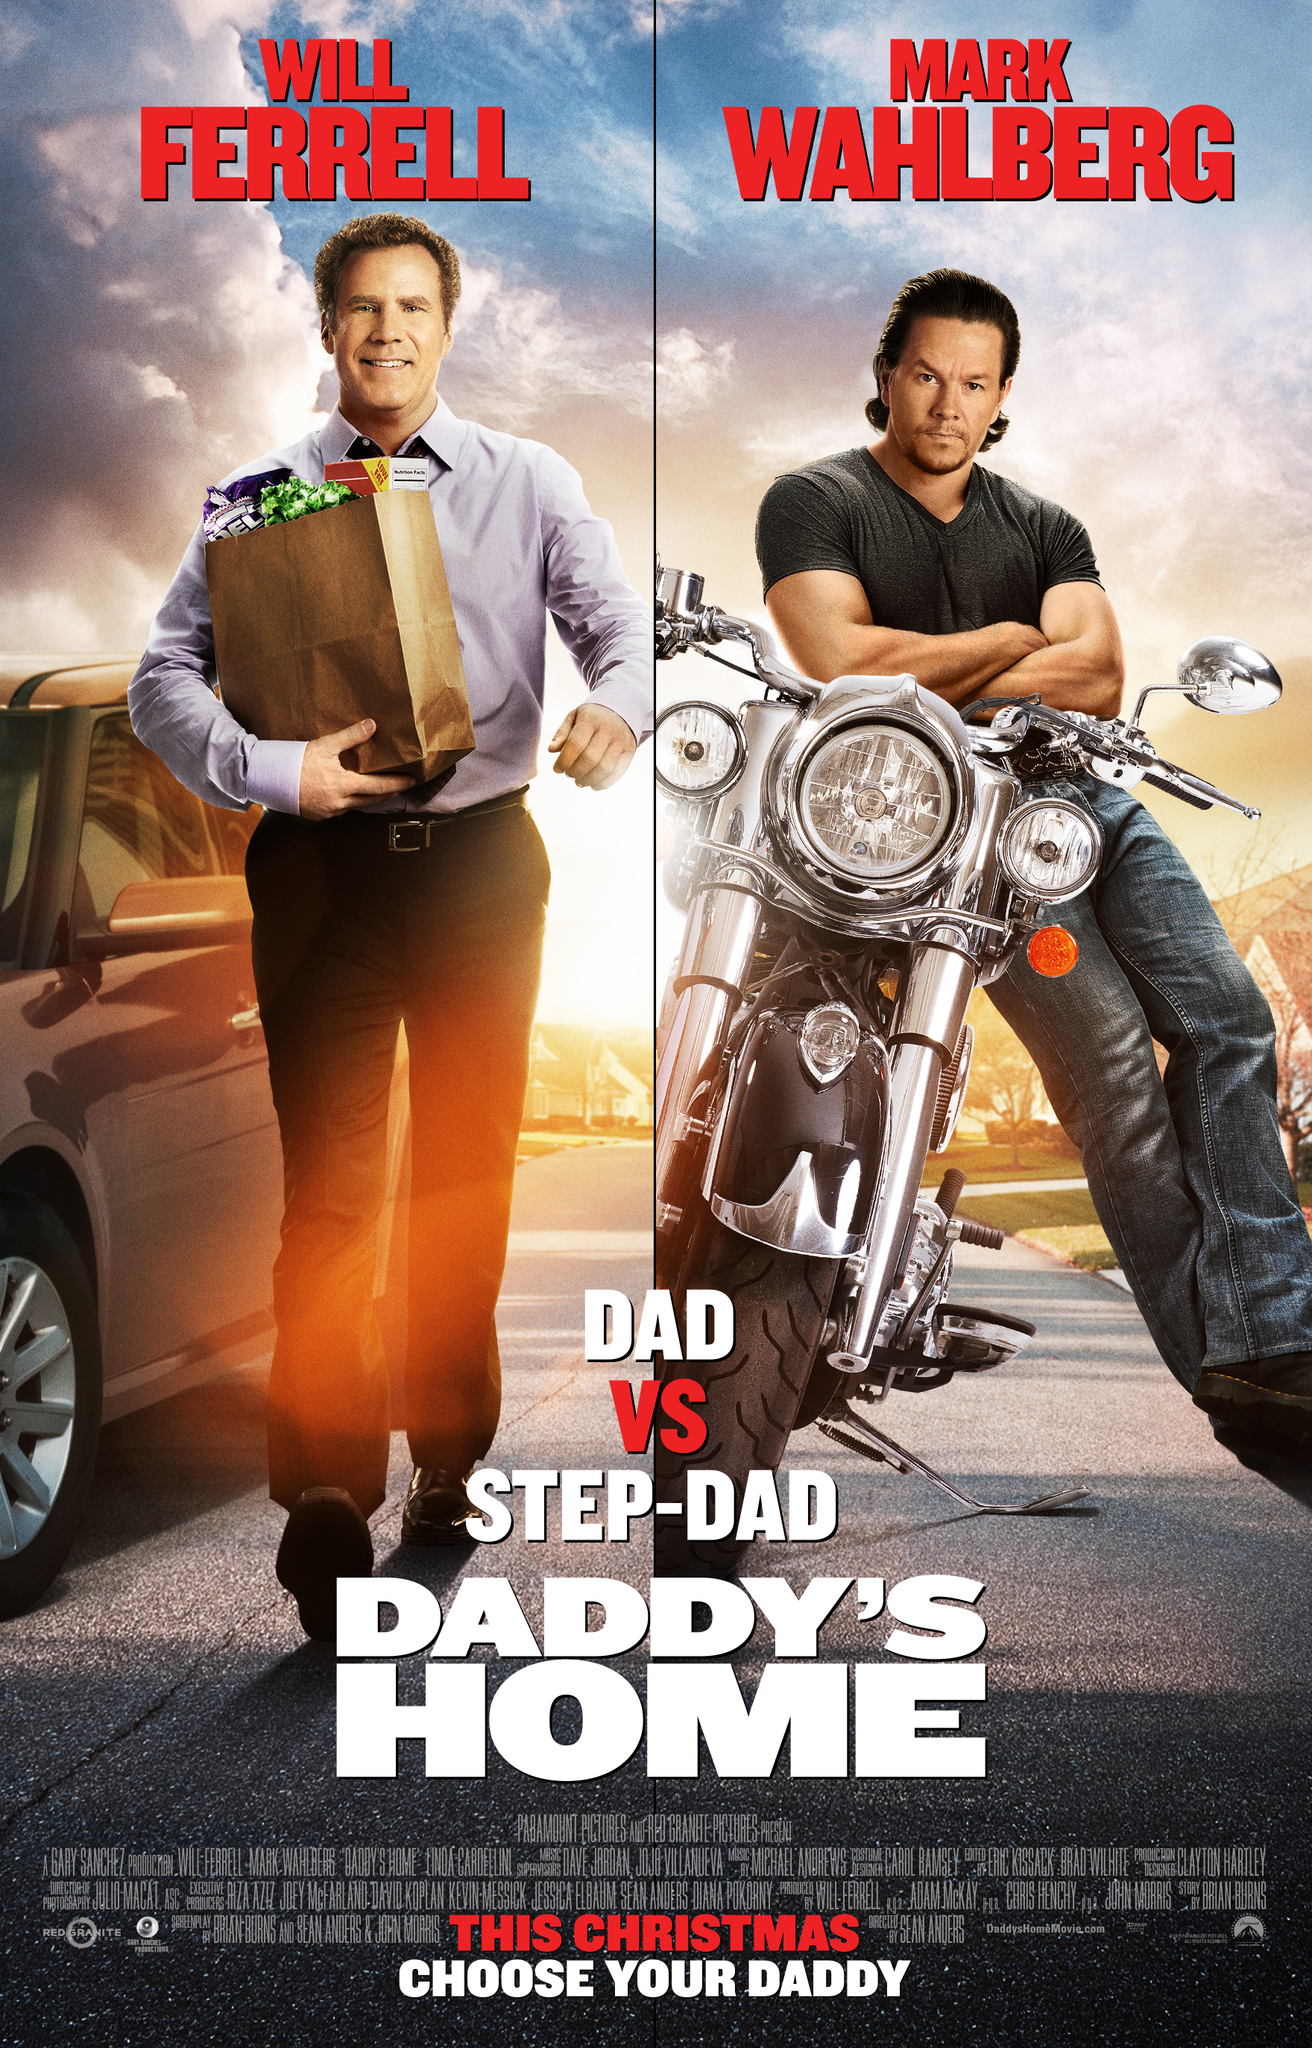 Nonton film Daddys Home layarkaca21 indoxx1 ganool online streaming terbaru